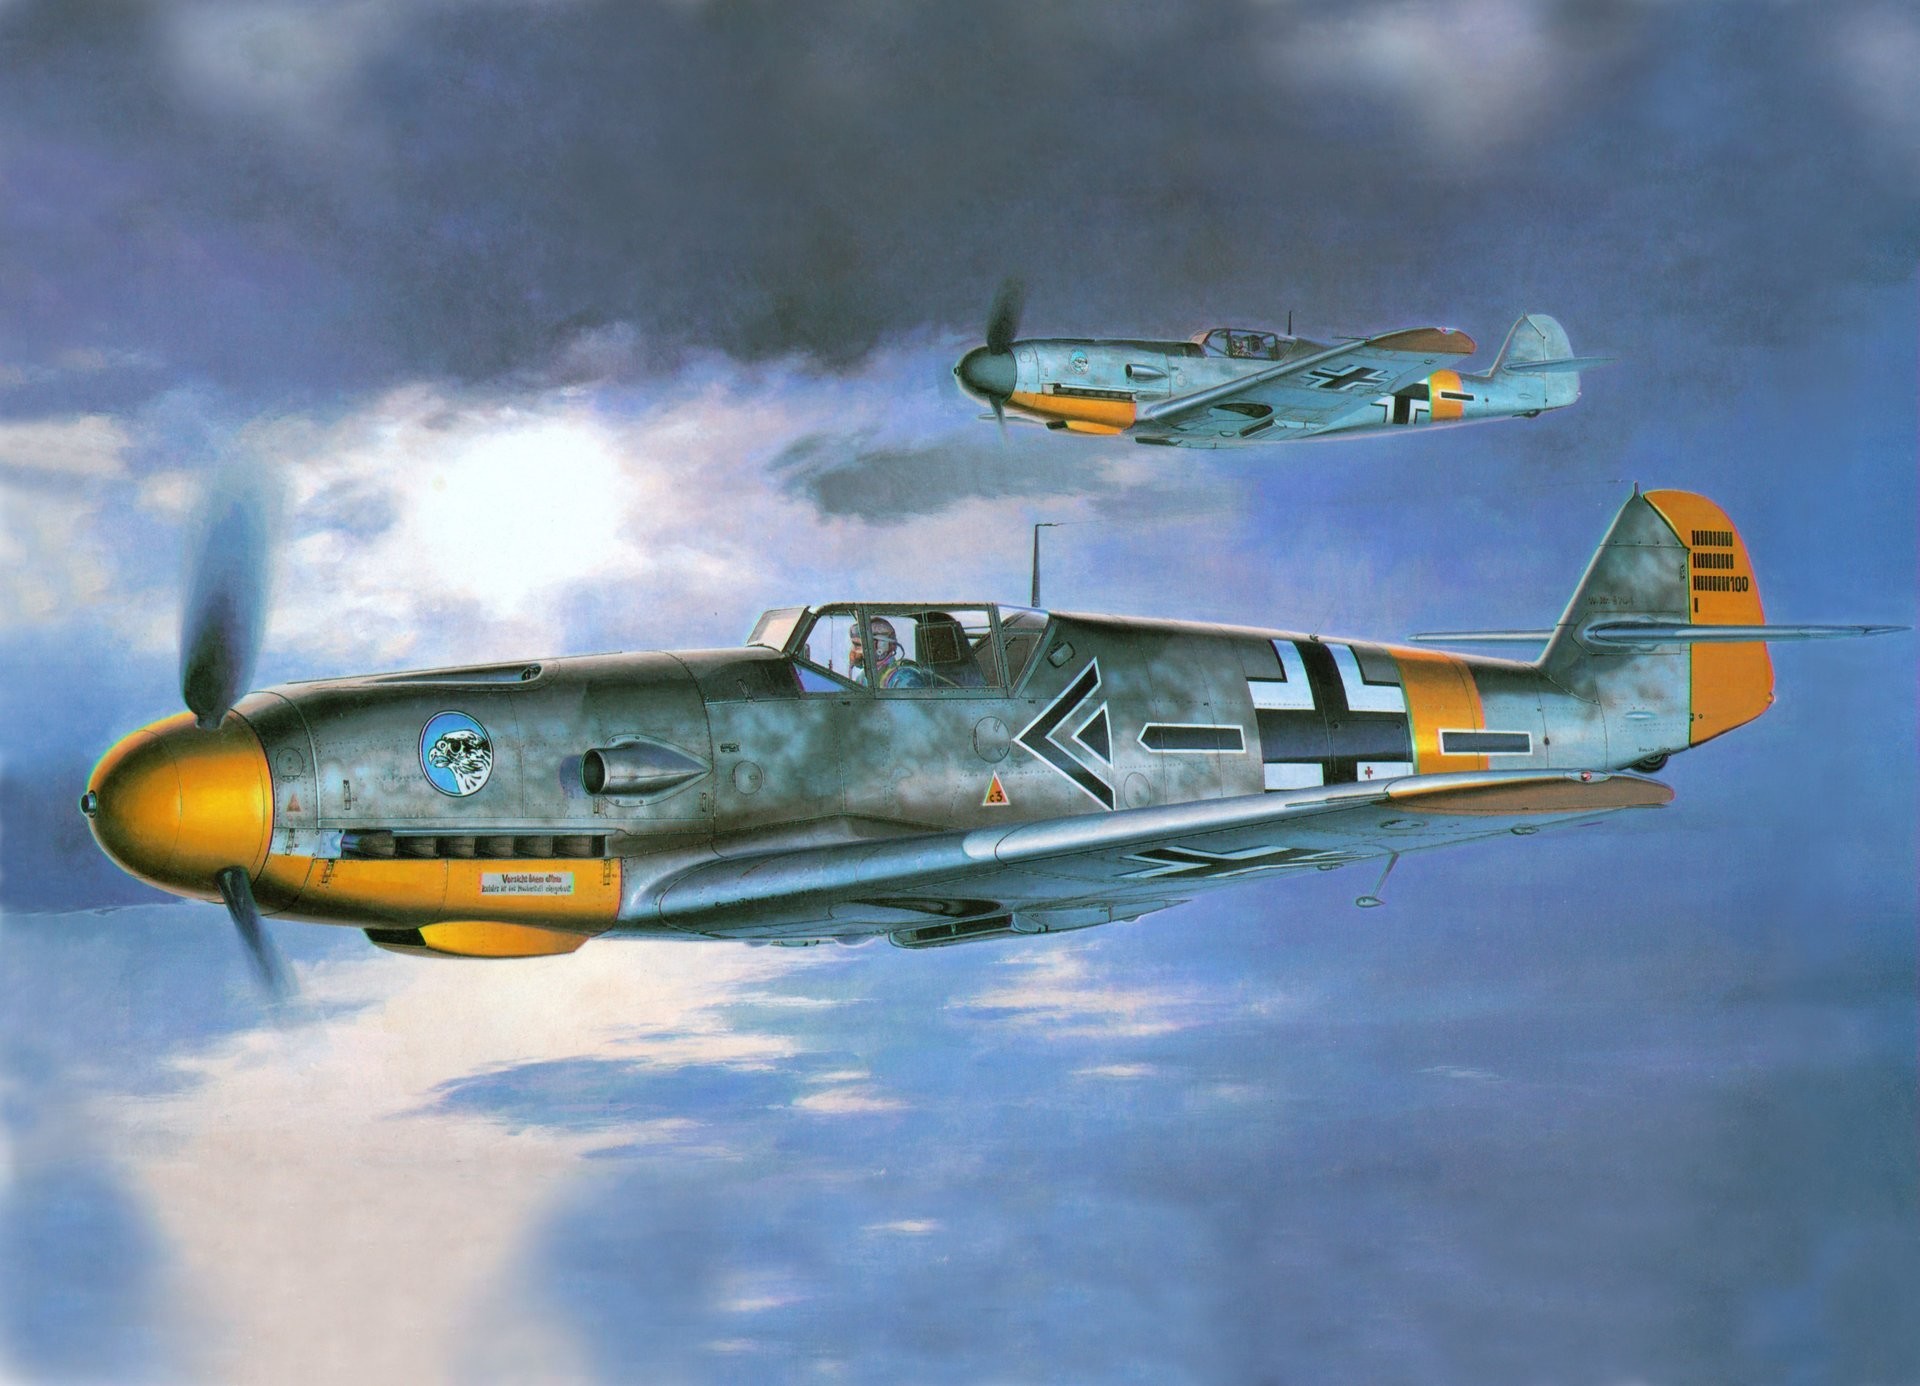 1920x1386 picture plane bf -109f2 messerschmitt messerschmitt squadron commander jg51  jagdgeschwader 51 moelders luftwaffe luftwaffe the